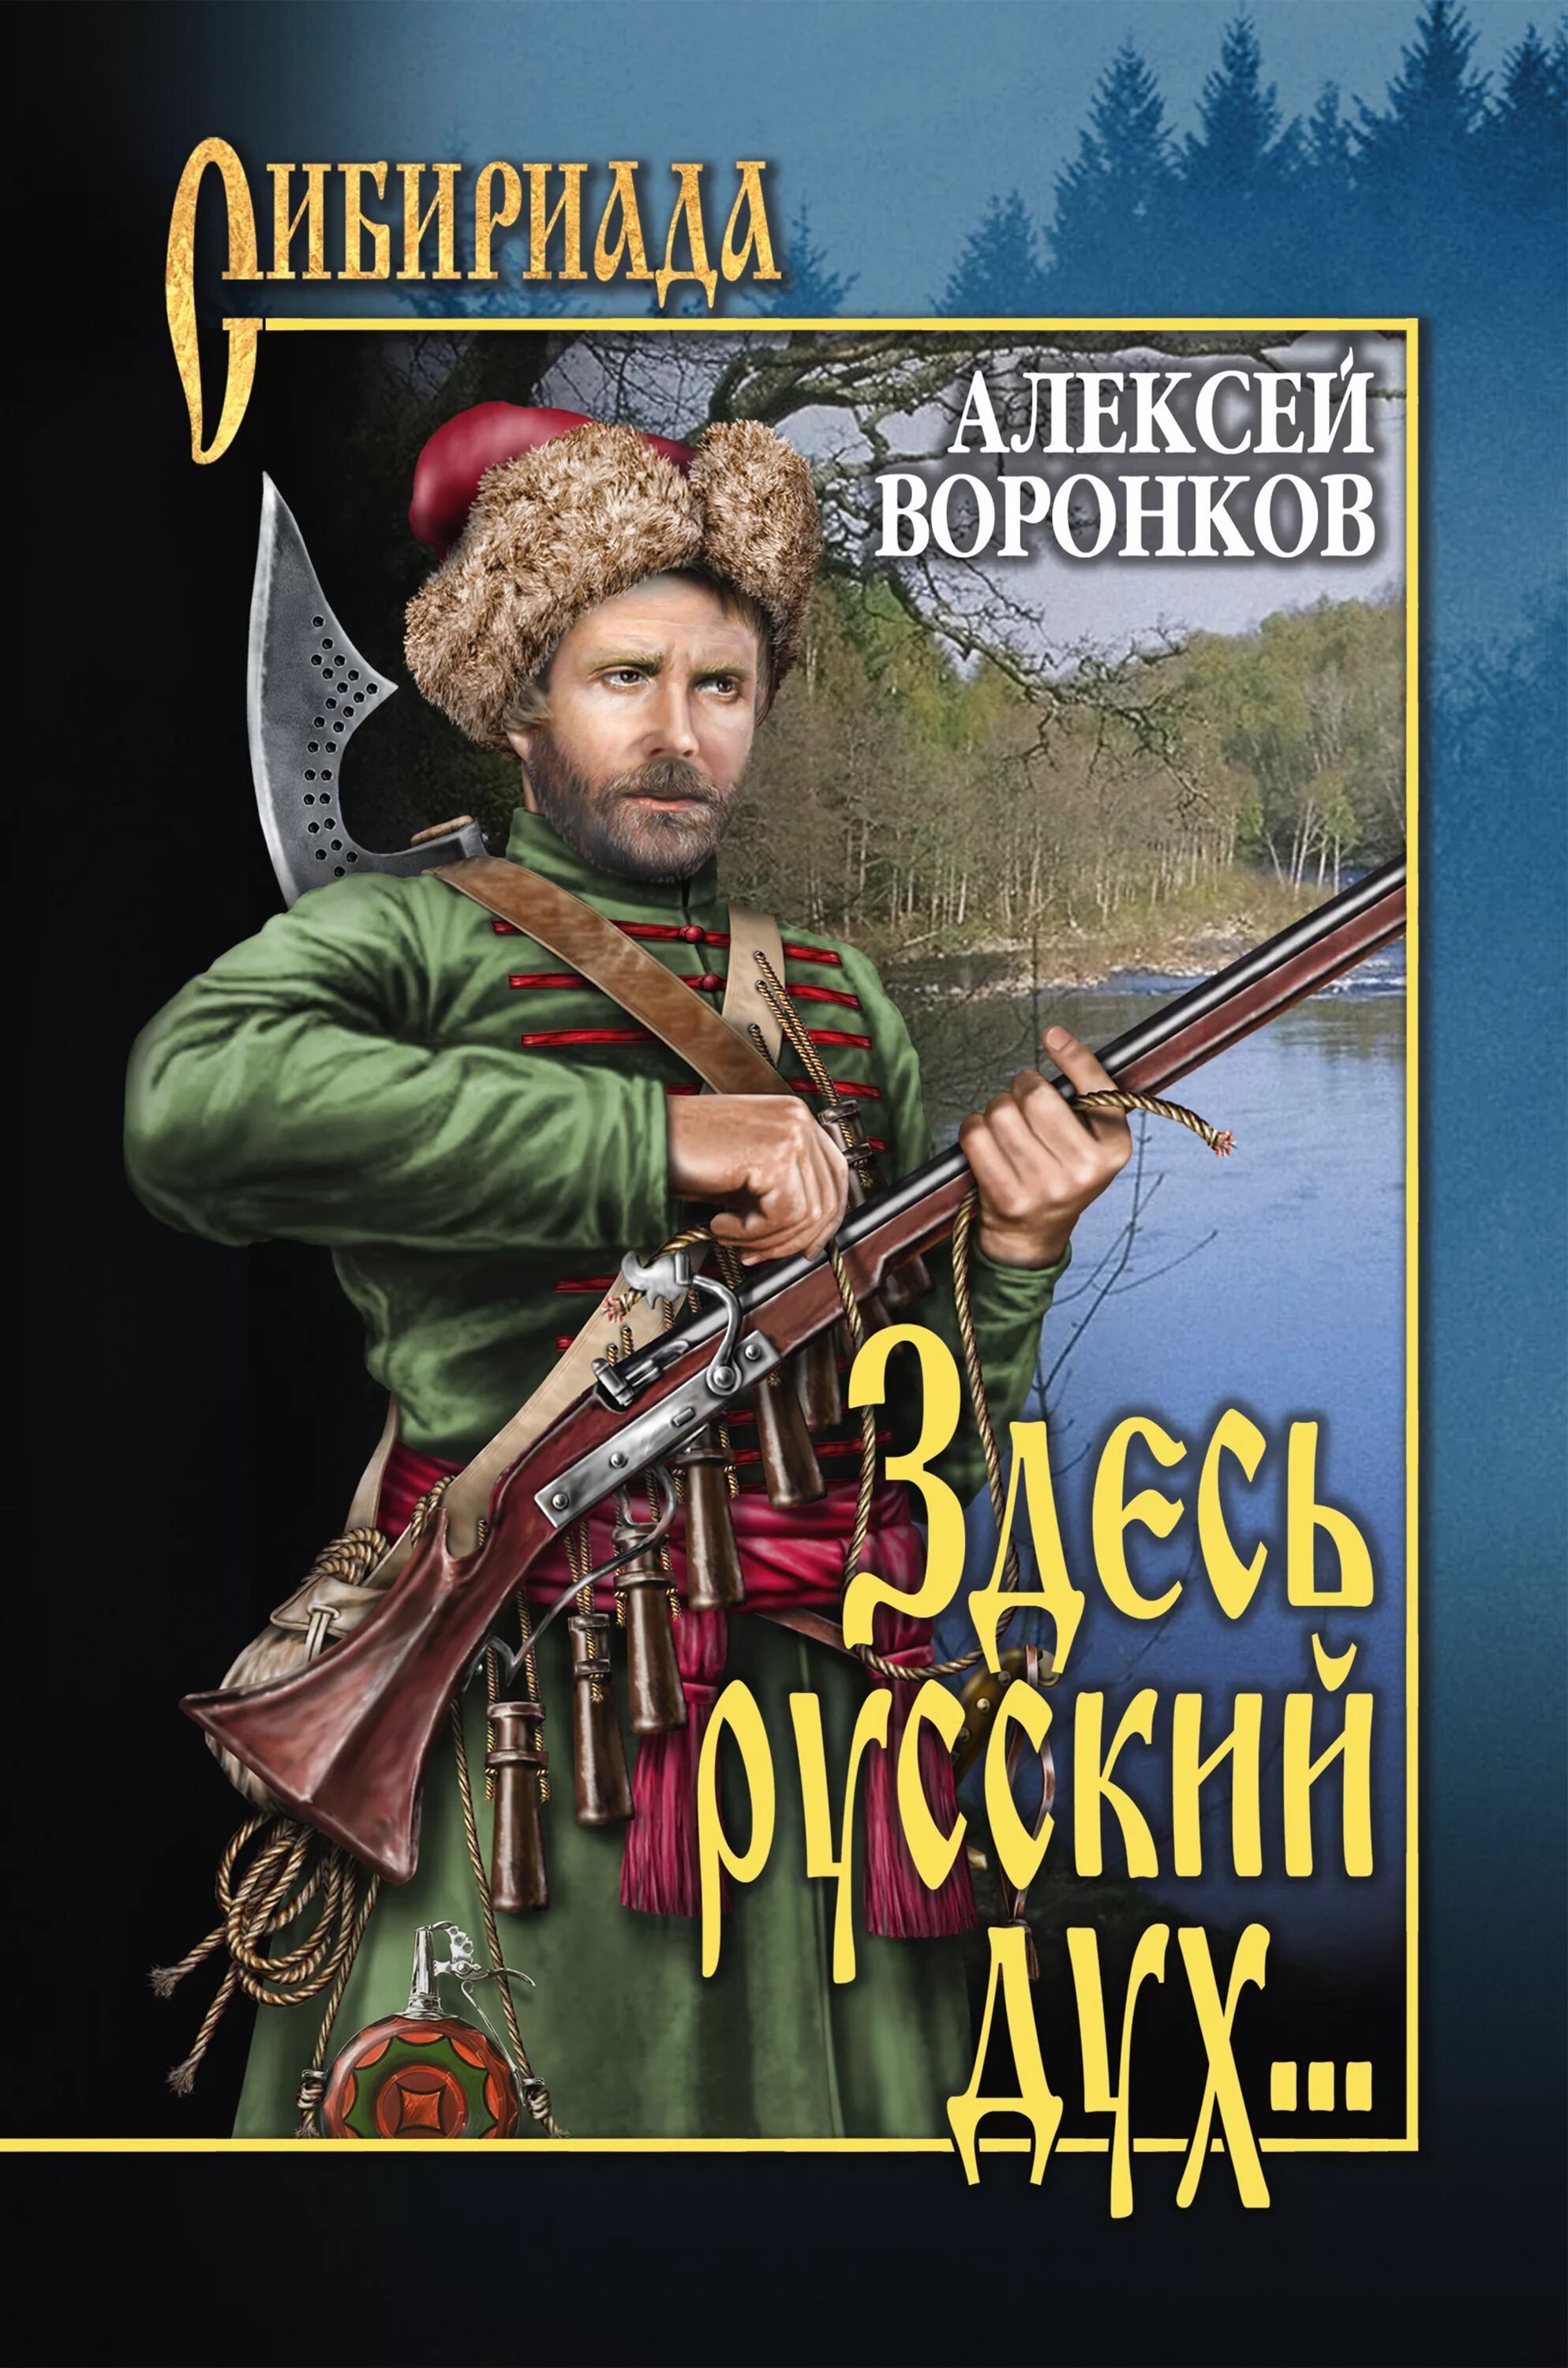 Художественные исторические книги. Здесь русский дух книга.